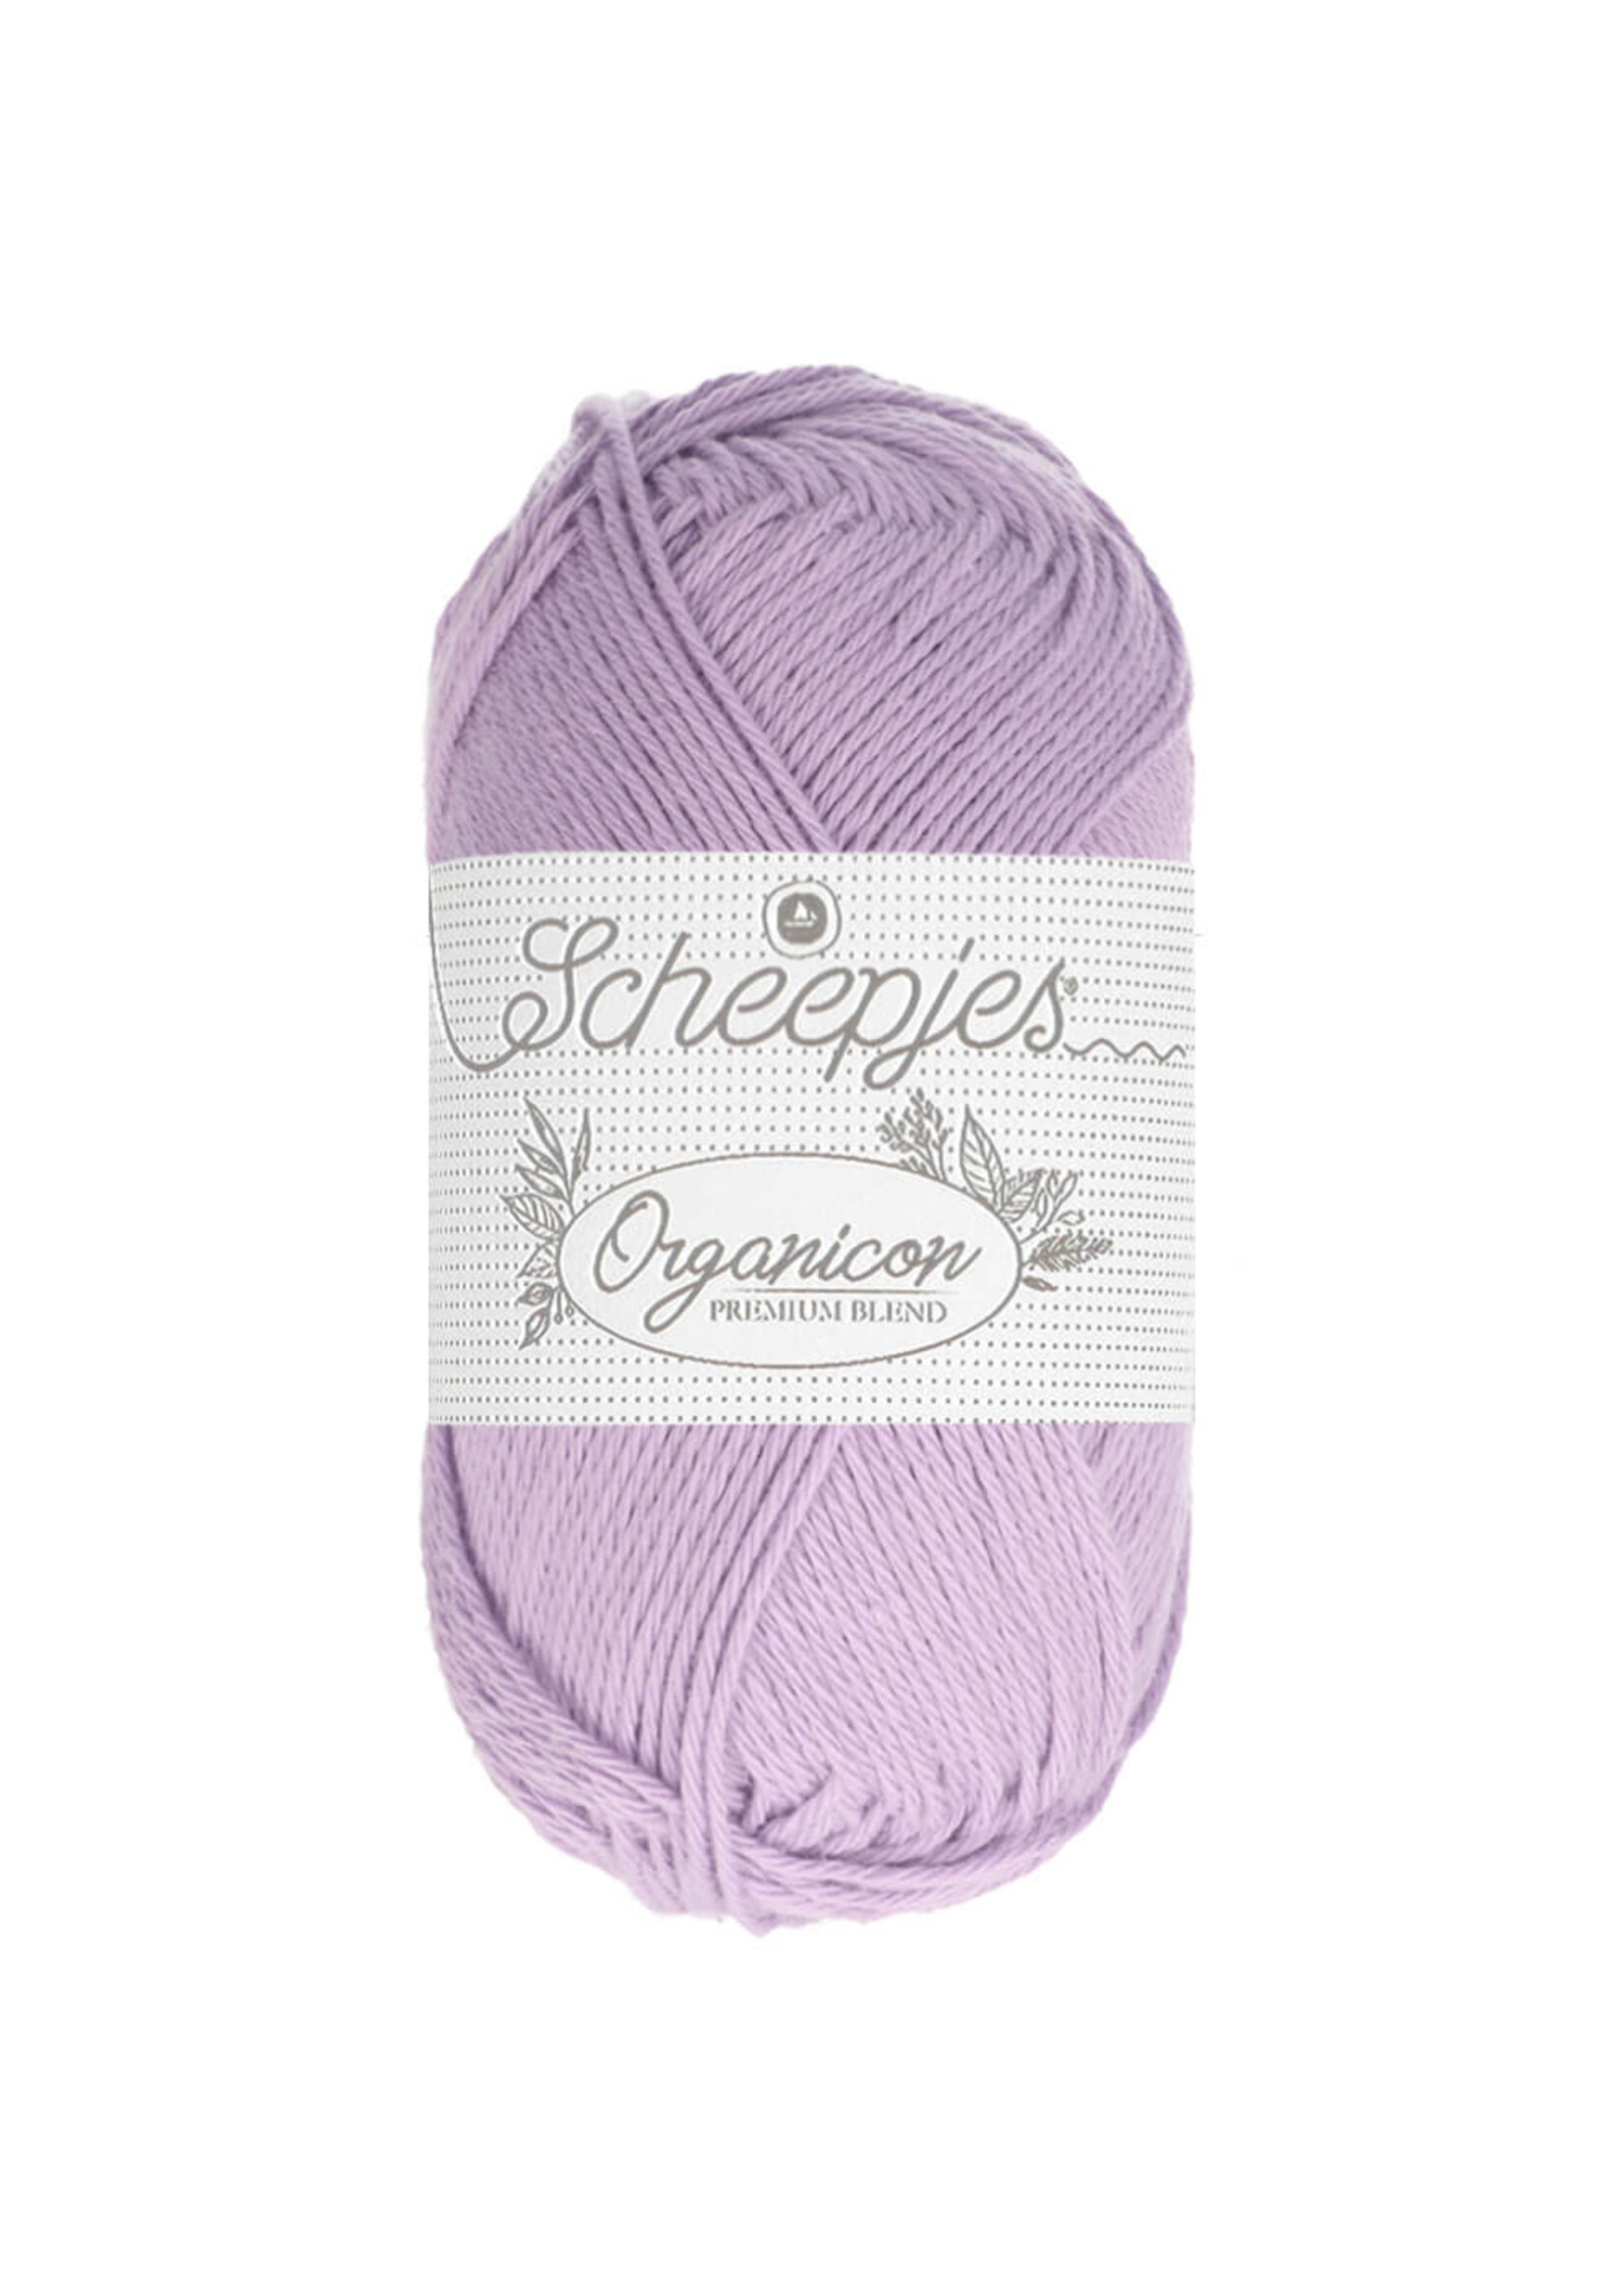 Scheepjes Organicon 50gr - 205 Lavender